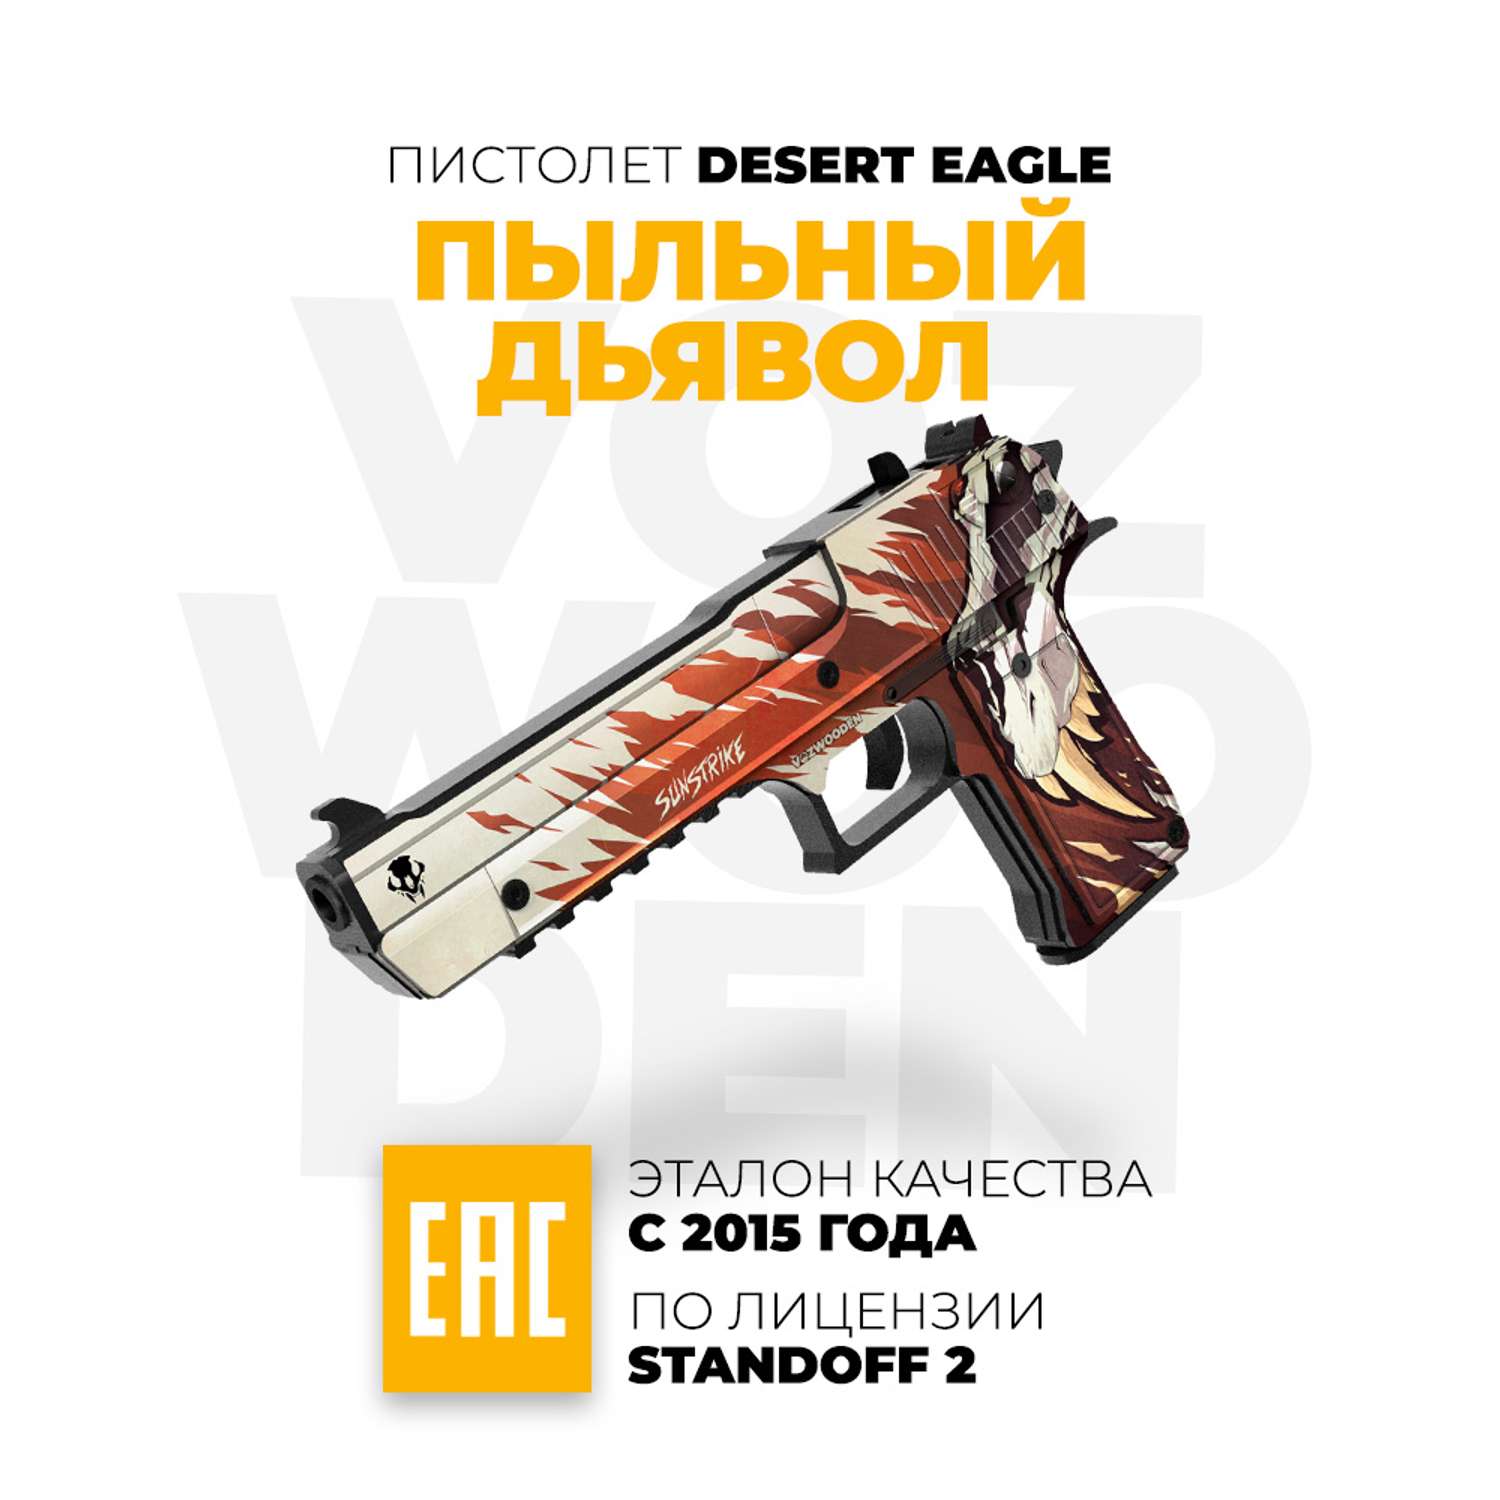 Деревянный пистолет VozWooden Desert Eagle Пыльный Дьявол из Standoff 2 - фото 1